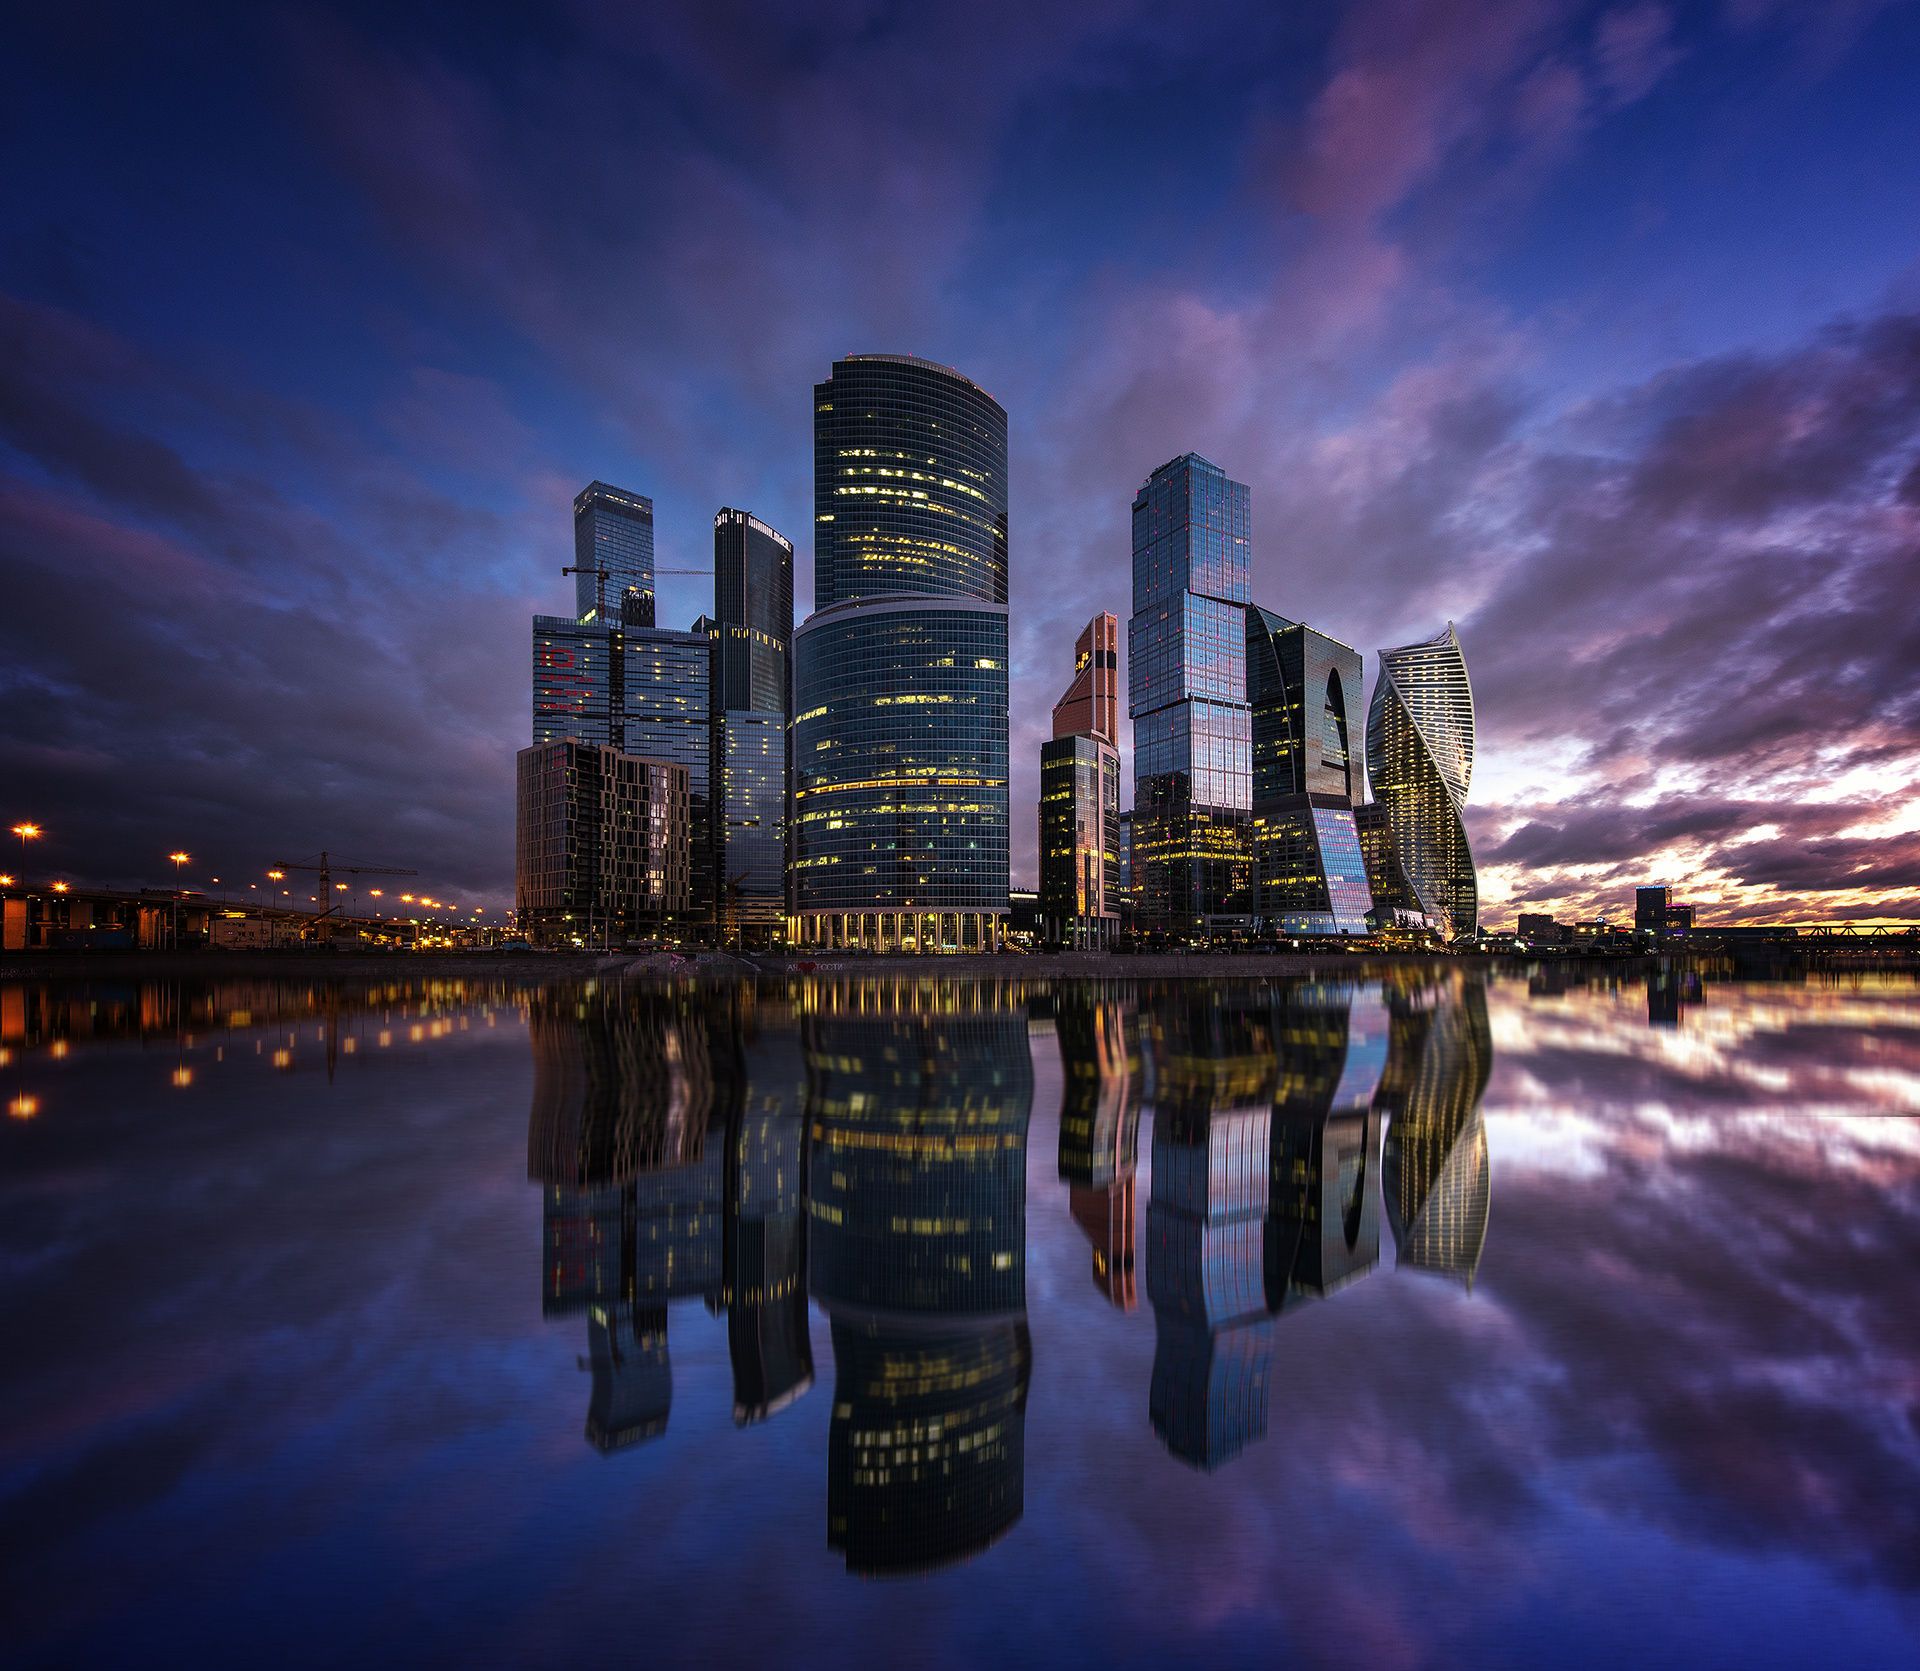 莫斯科城:拥有7座高度欧洲前10的建筑,超高层大楼比上海还多